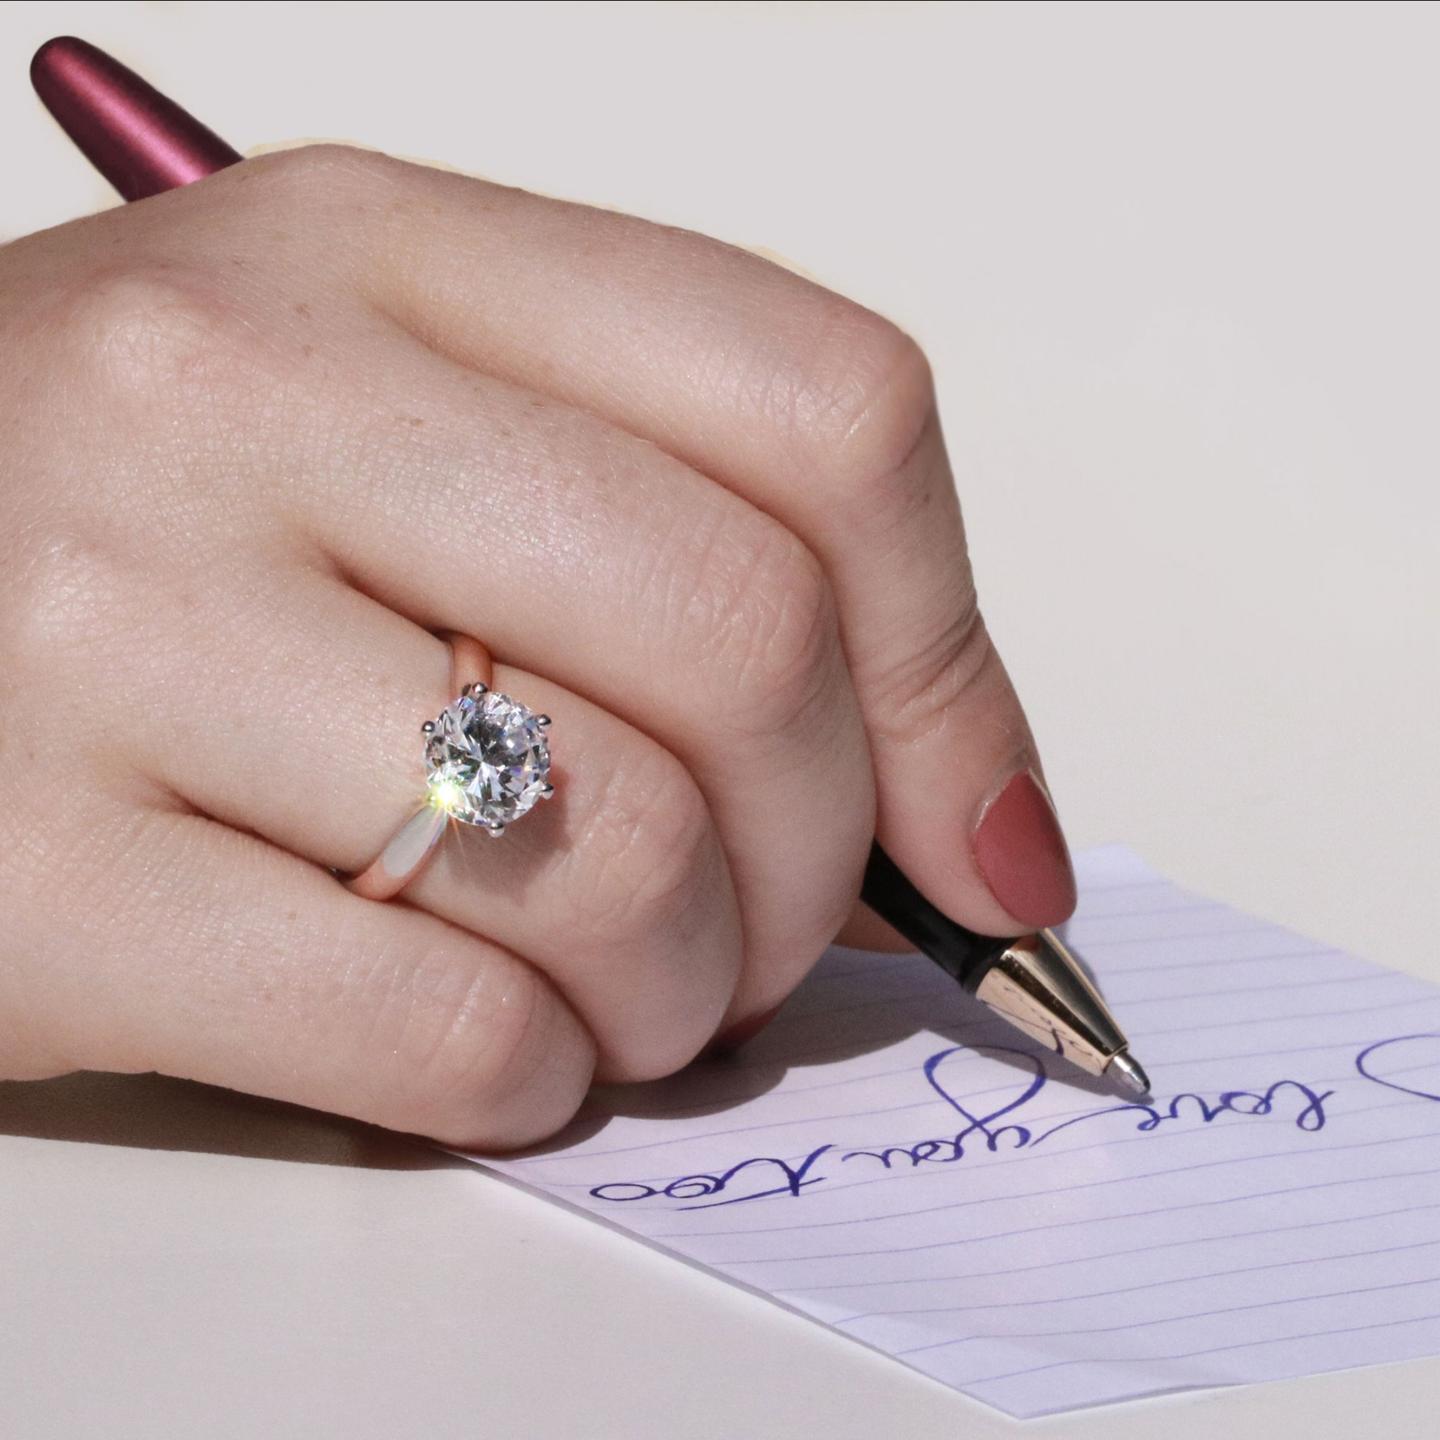 我为什么应该选择老式欧洲切割的钻石订婚戒指?